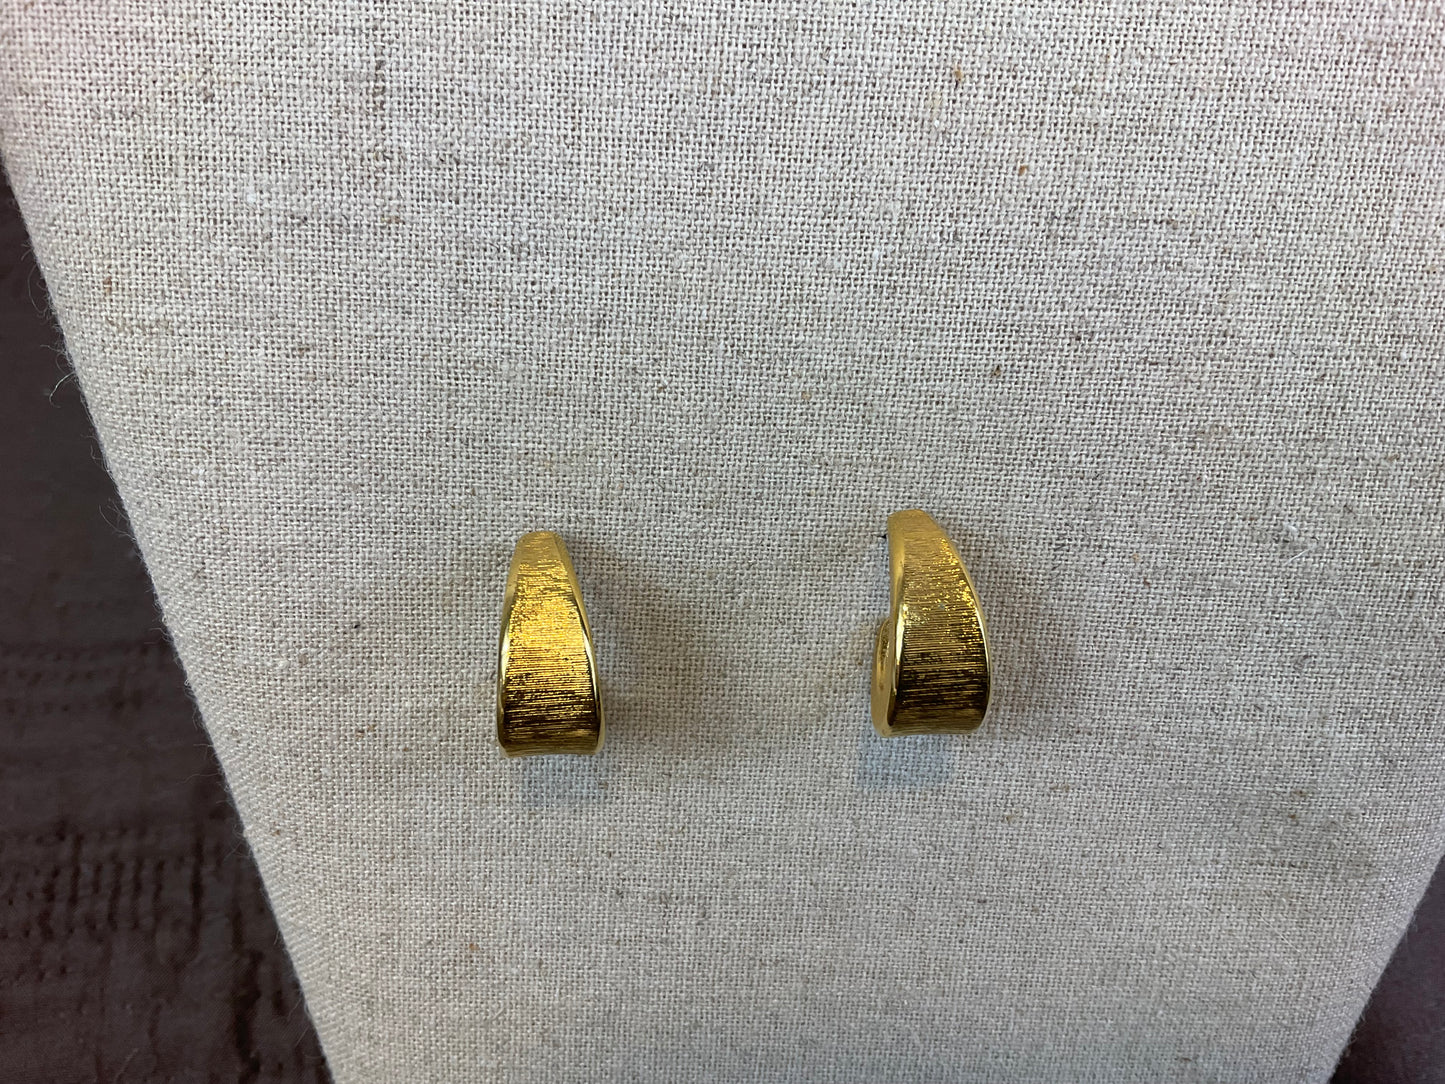 Gold Tone Earrings, 3 Pr